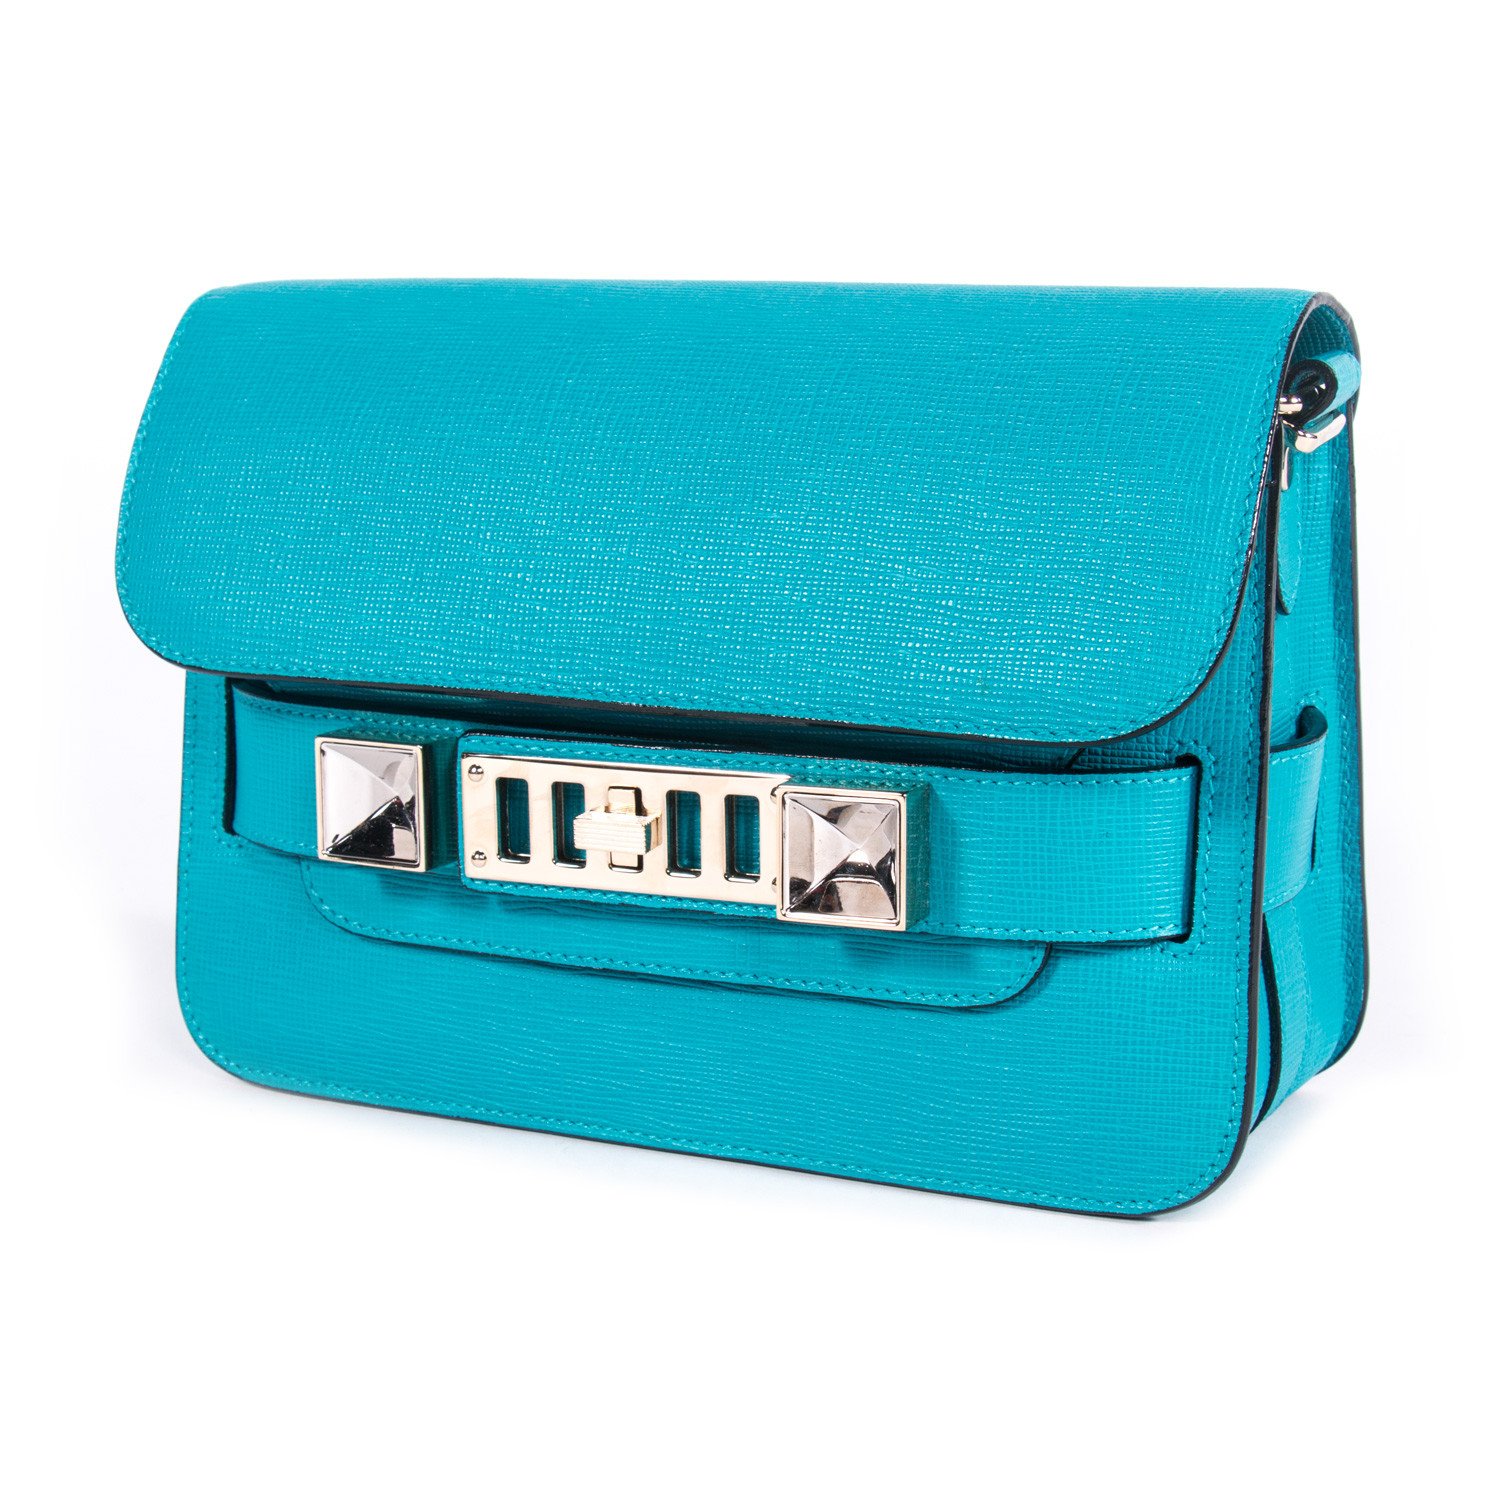 Proenza Schouler Blue Mini Classic PS11 Shoulder Bag